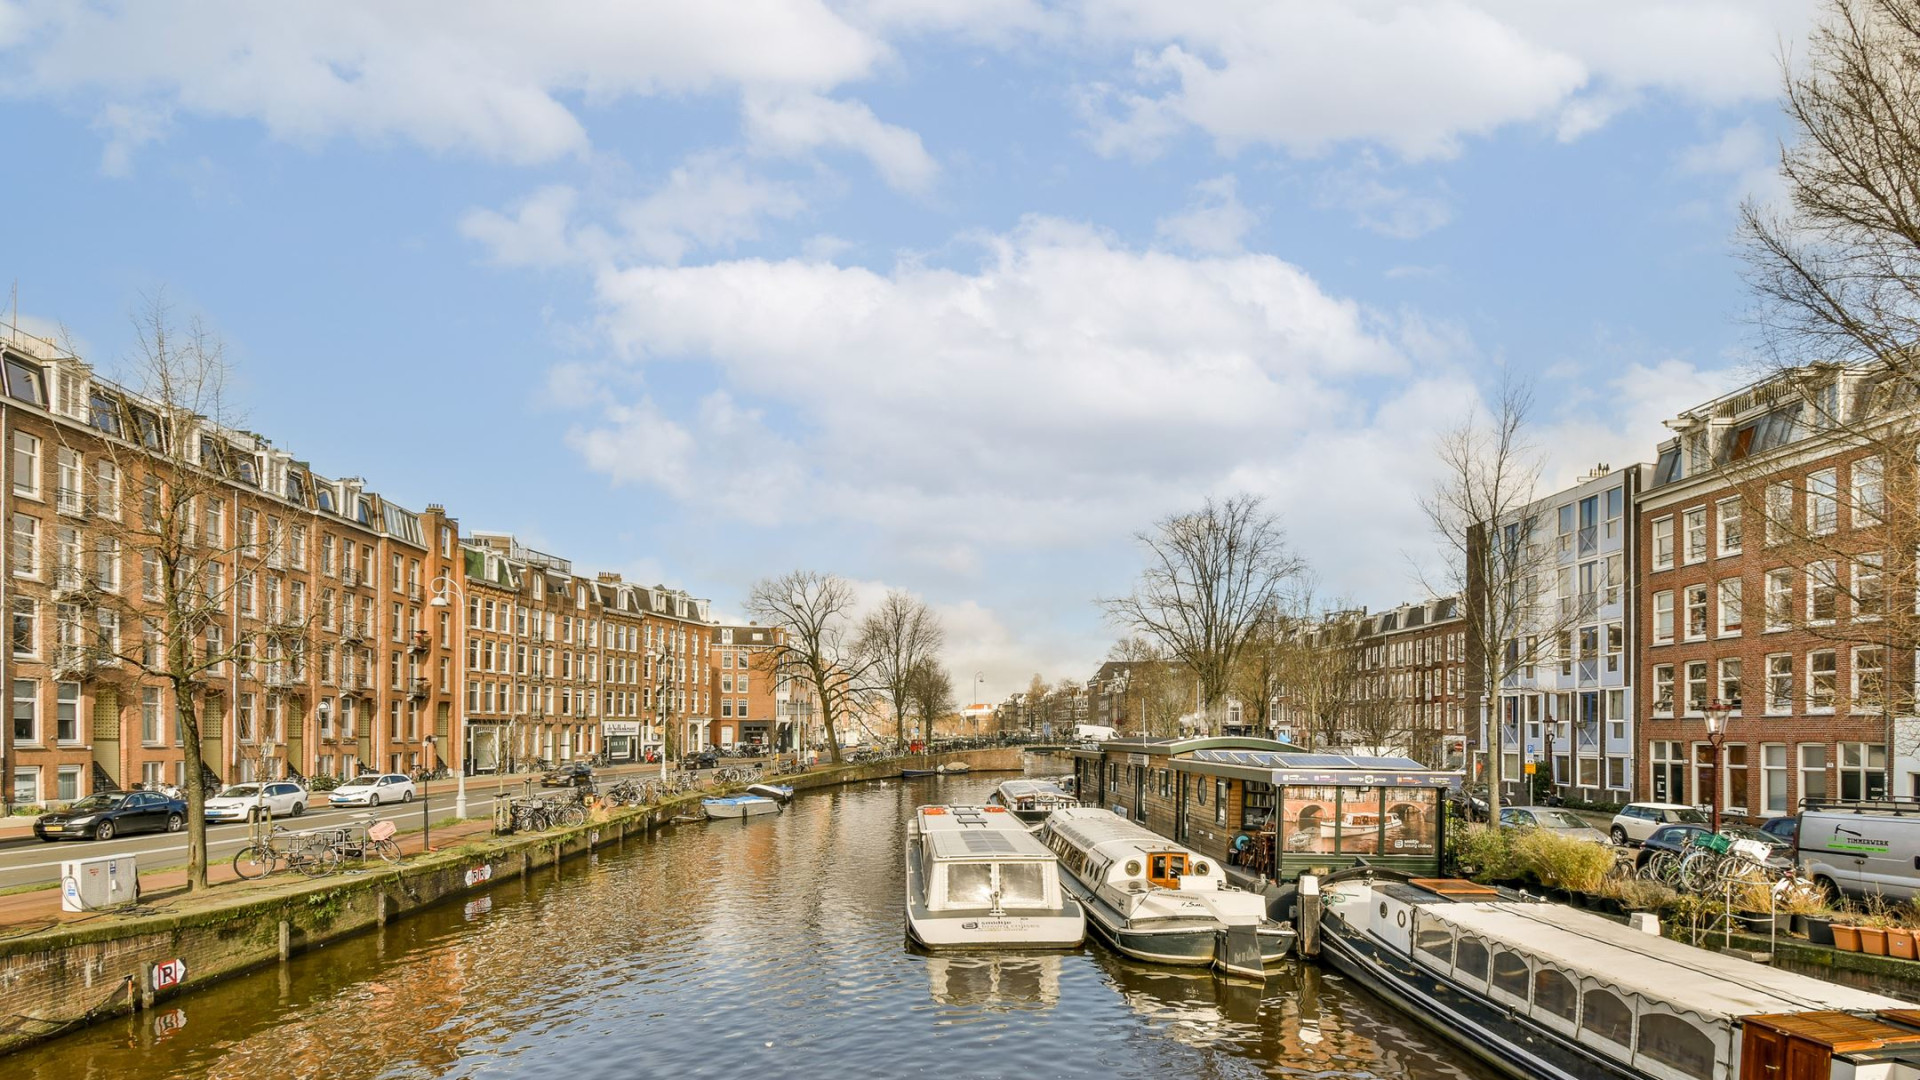 Art Rooijakkers heeft dit bijzondere dubbele benedenhuis in Amsterdam gekocht. Zie alle binnenfoto's 29